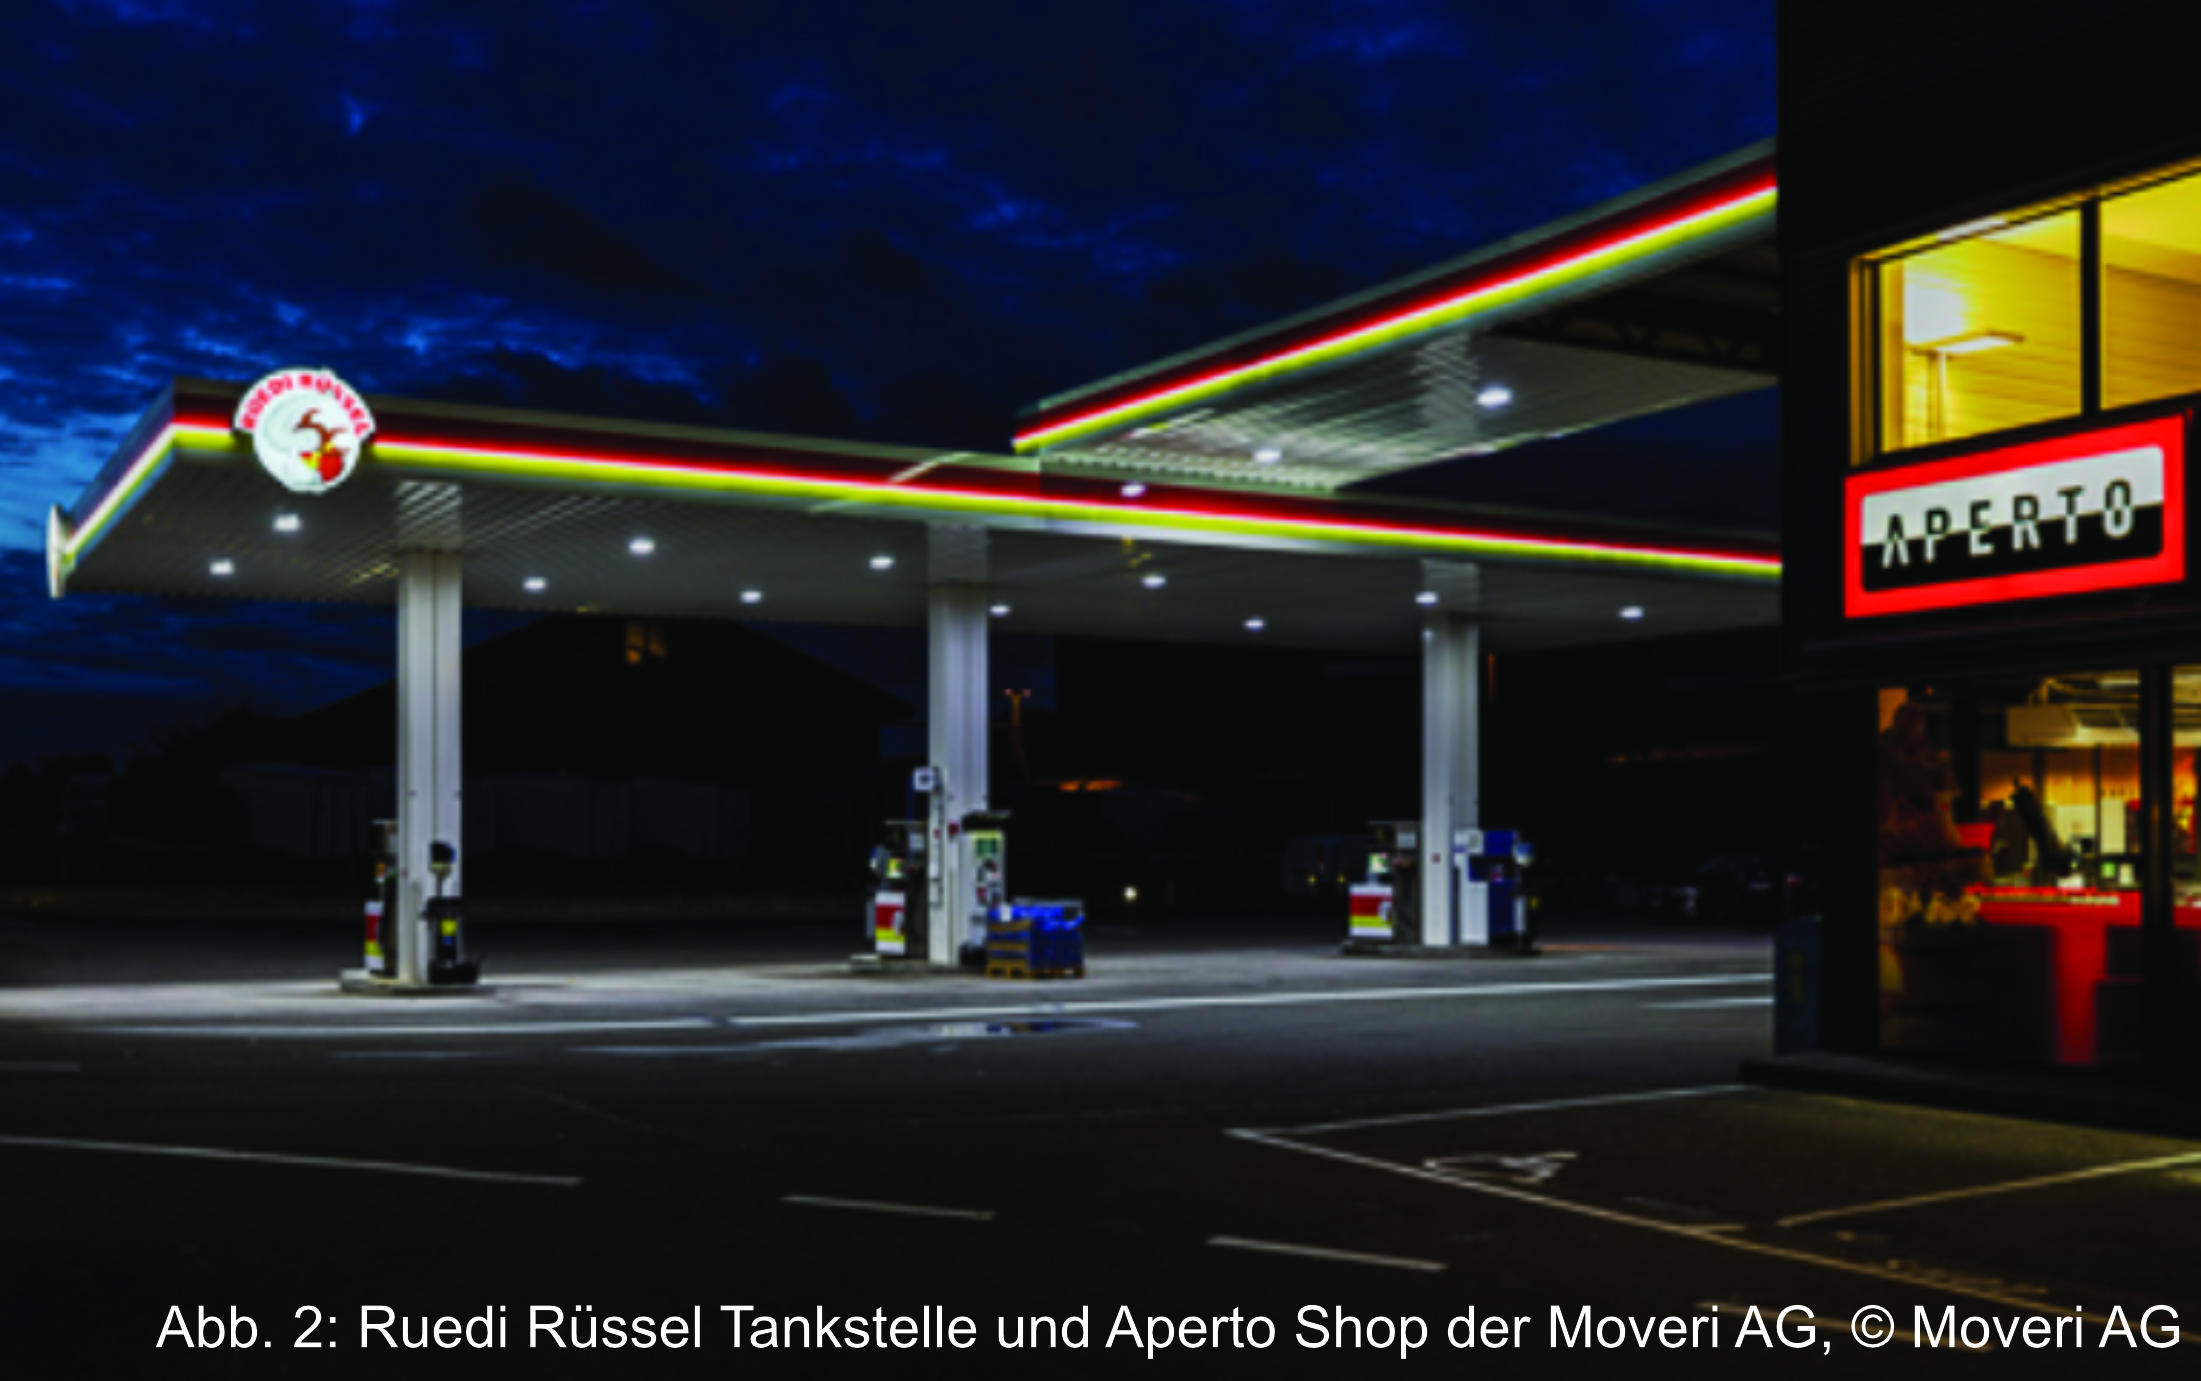 Ruedi Rüssel Tankstelle und Aperto Shop der Moveri AG